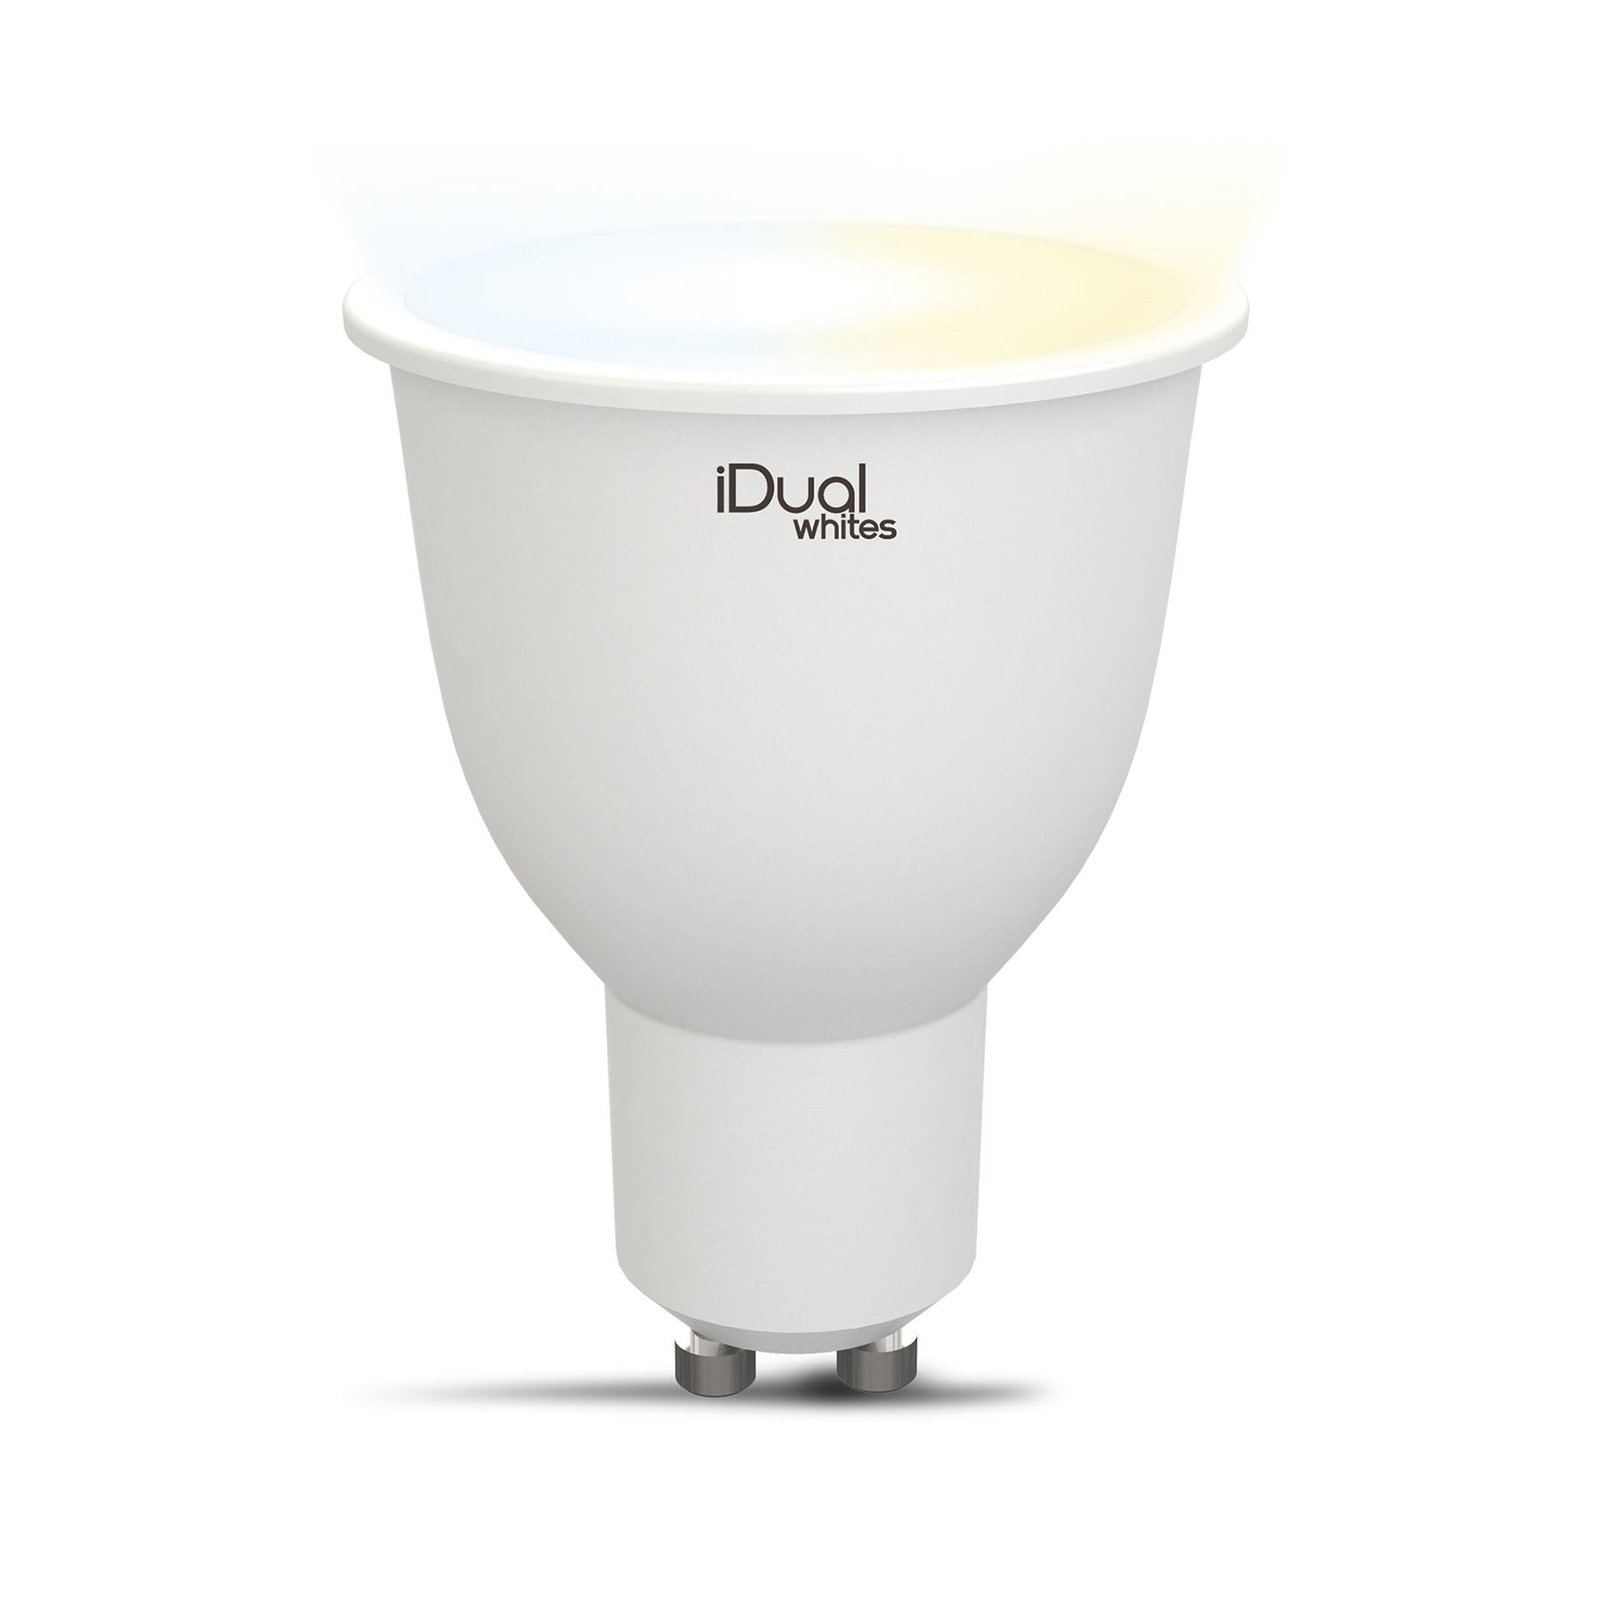 iDual Whites reflector LED GU10 5,8W tunable White